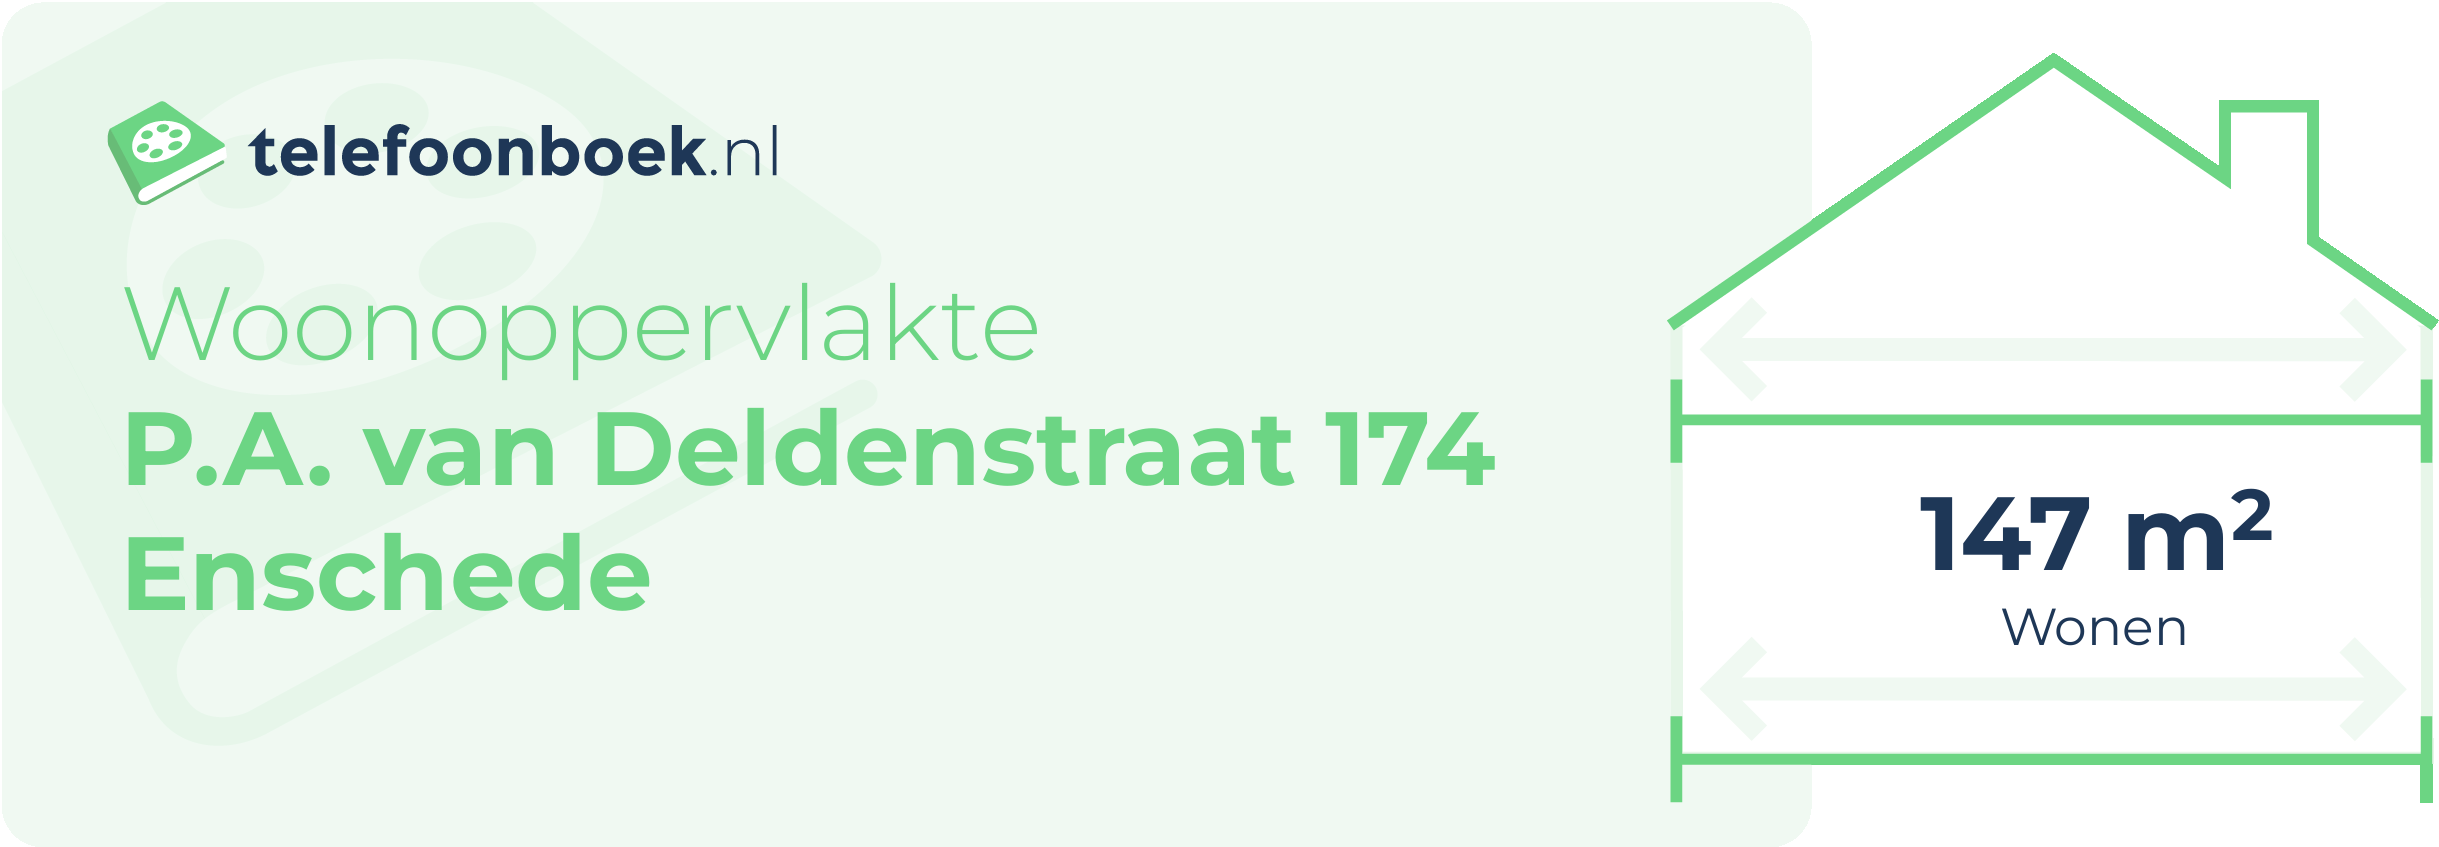 Woonoppervlakte P.A. Van Deldenstraat 174 Enschede